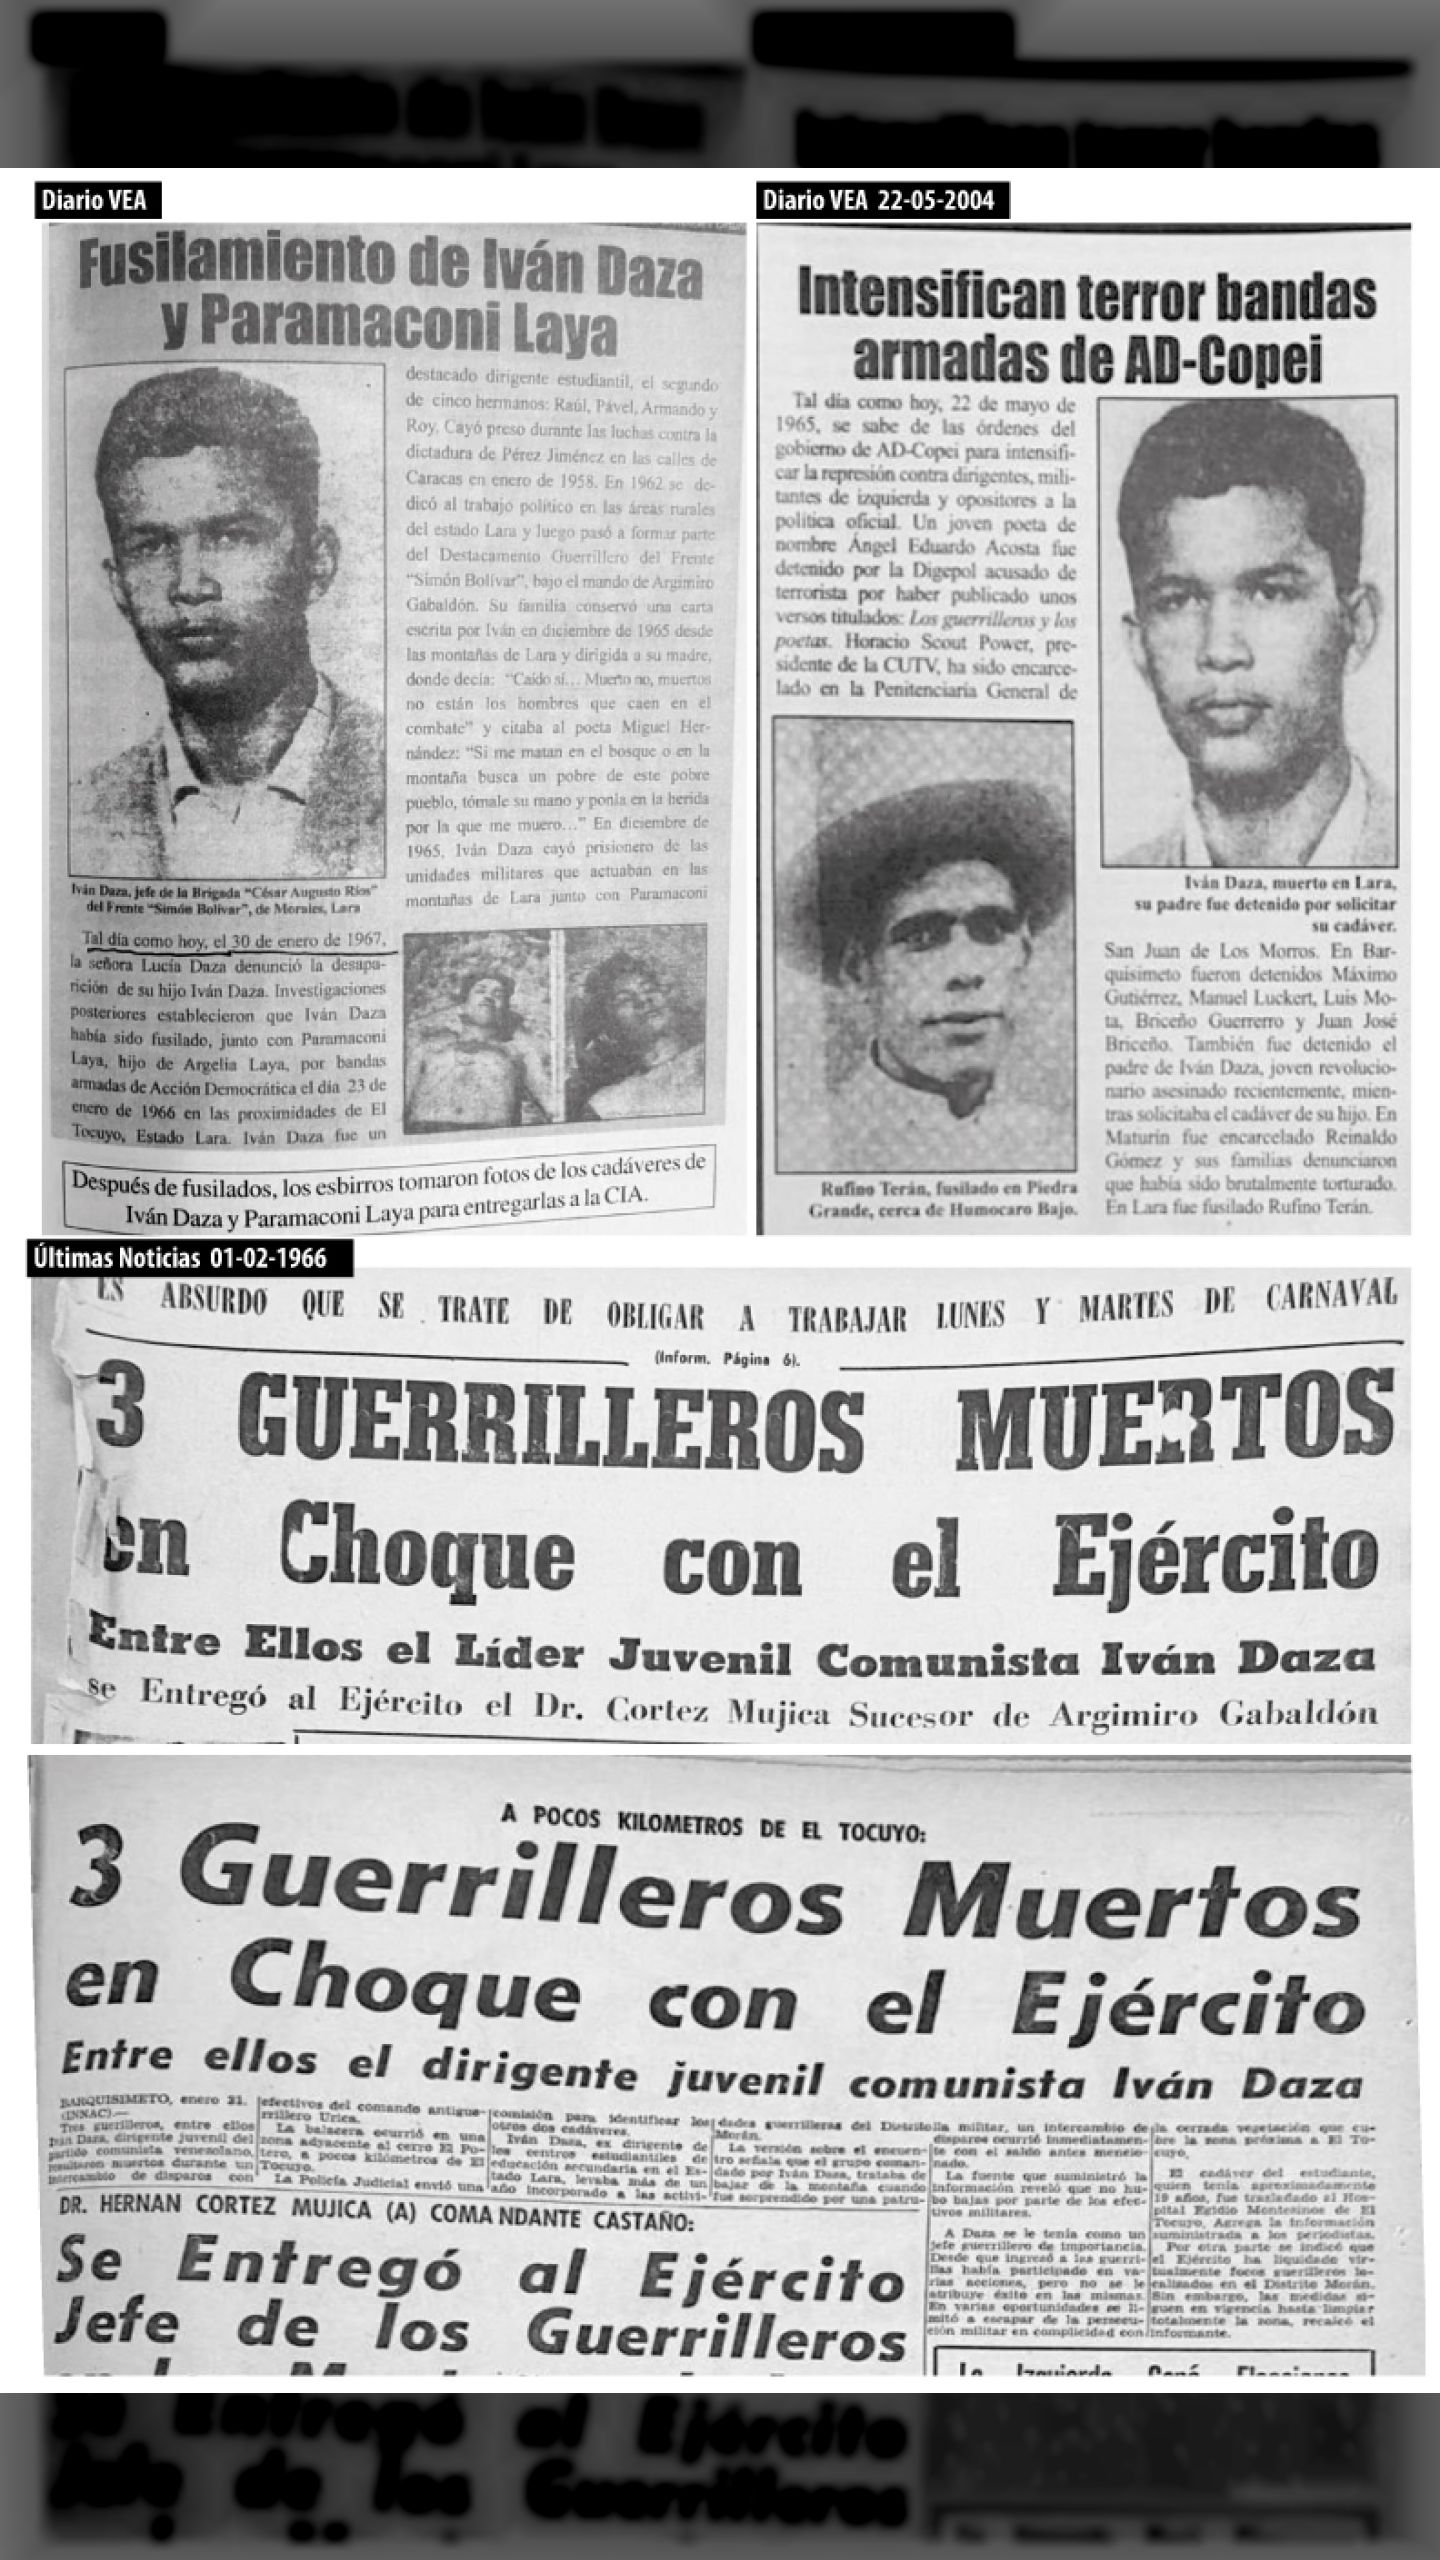 Durante la “Operación de Exterminio Larga y Final”, son asesinados: IVÁN DAZA y PARAMACONI LAYA (Diario VEA, 22-05-2004/ Últimas Noticias y El Impulso, enero – abril 1966)